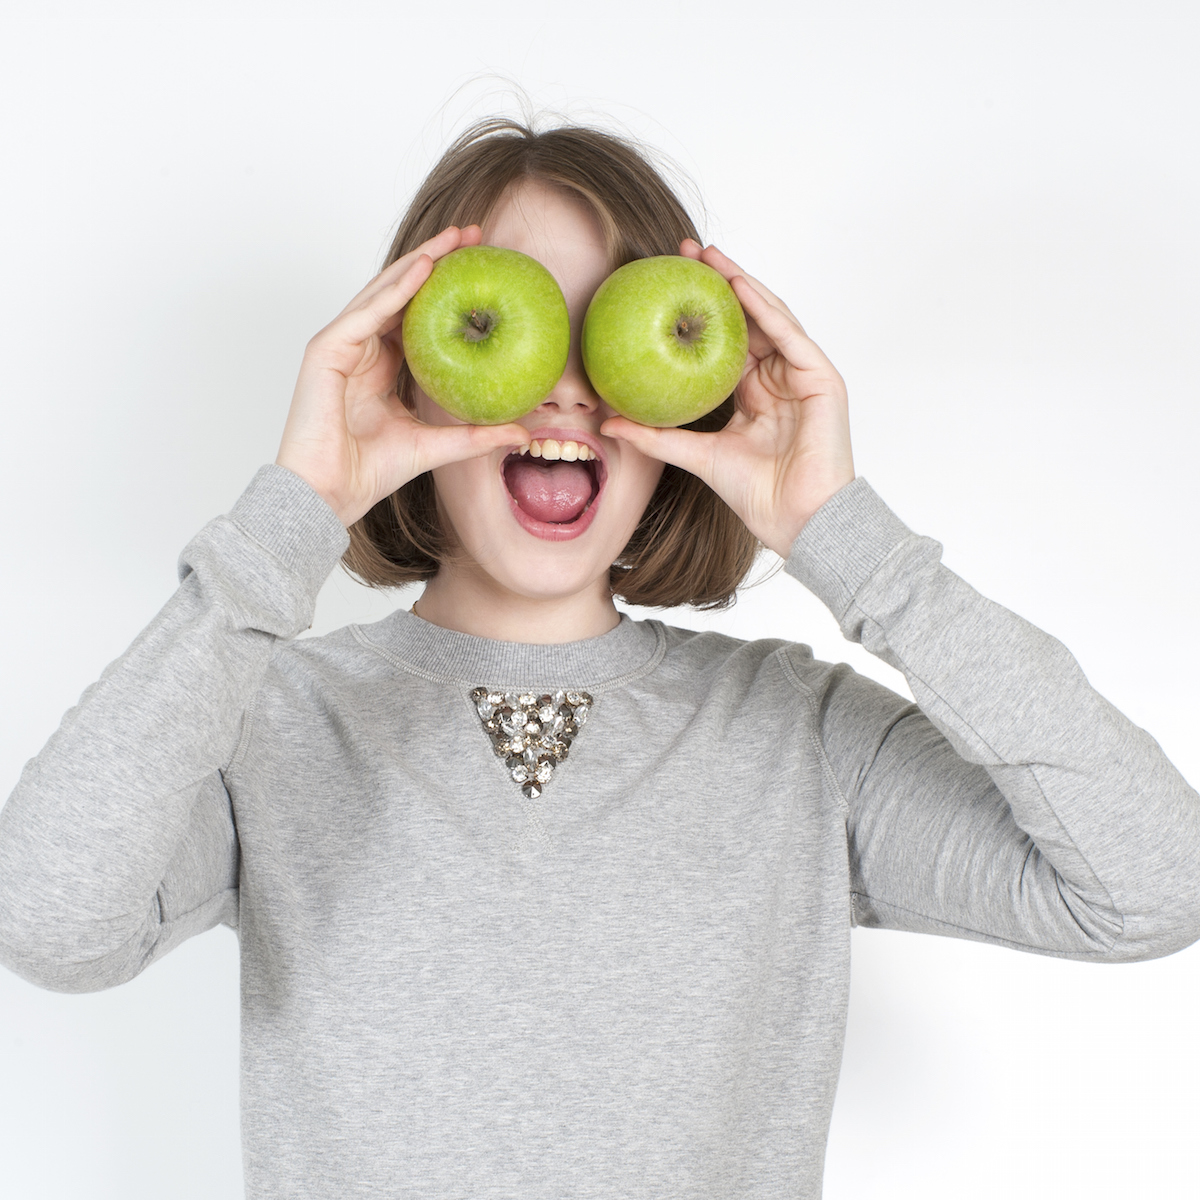 Я хочу зеленое яблоко прямо. Фотосессия с зелеными яблоками студийная. Девушка яблоки вместо глаз.